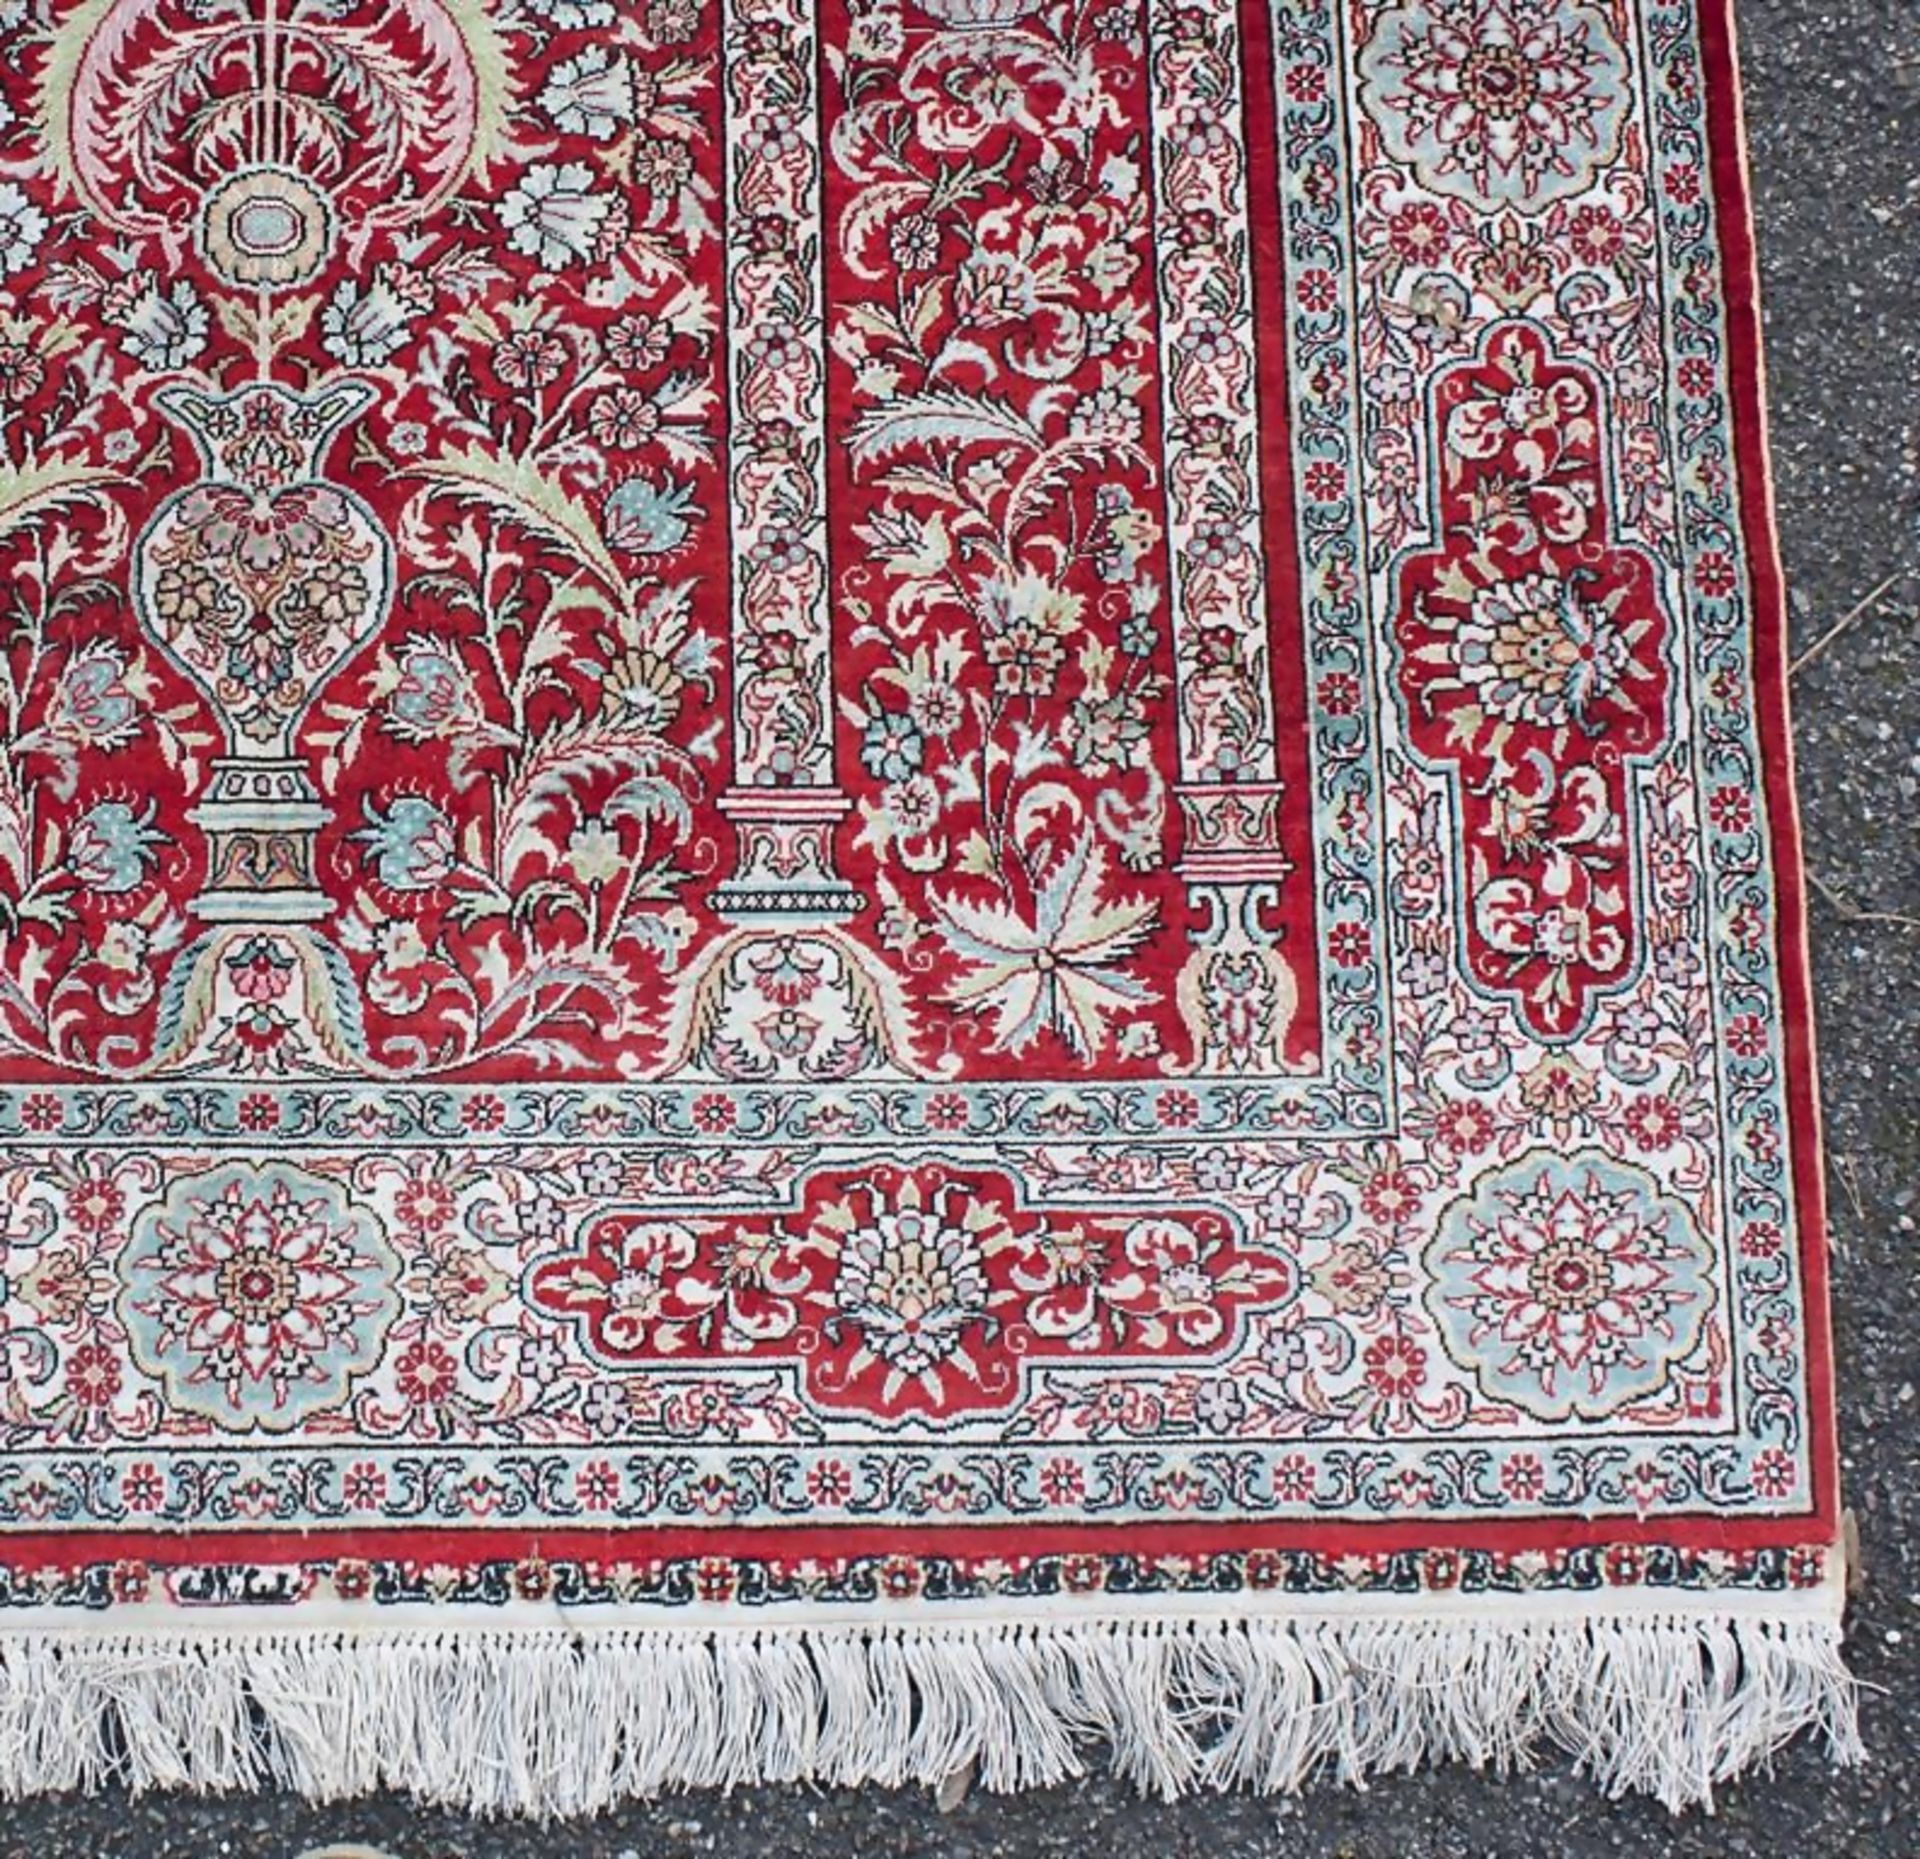 Gebetsteppich / A silk prayer rug - Bild 2 aus 2